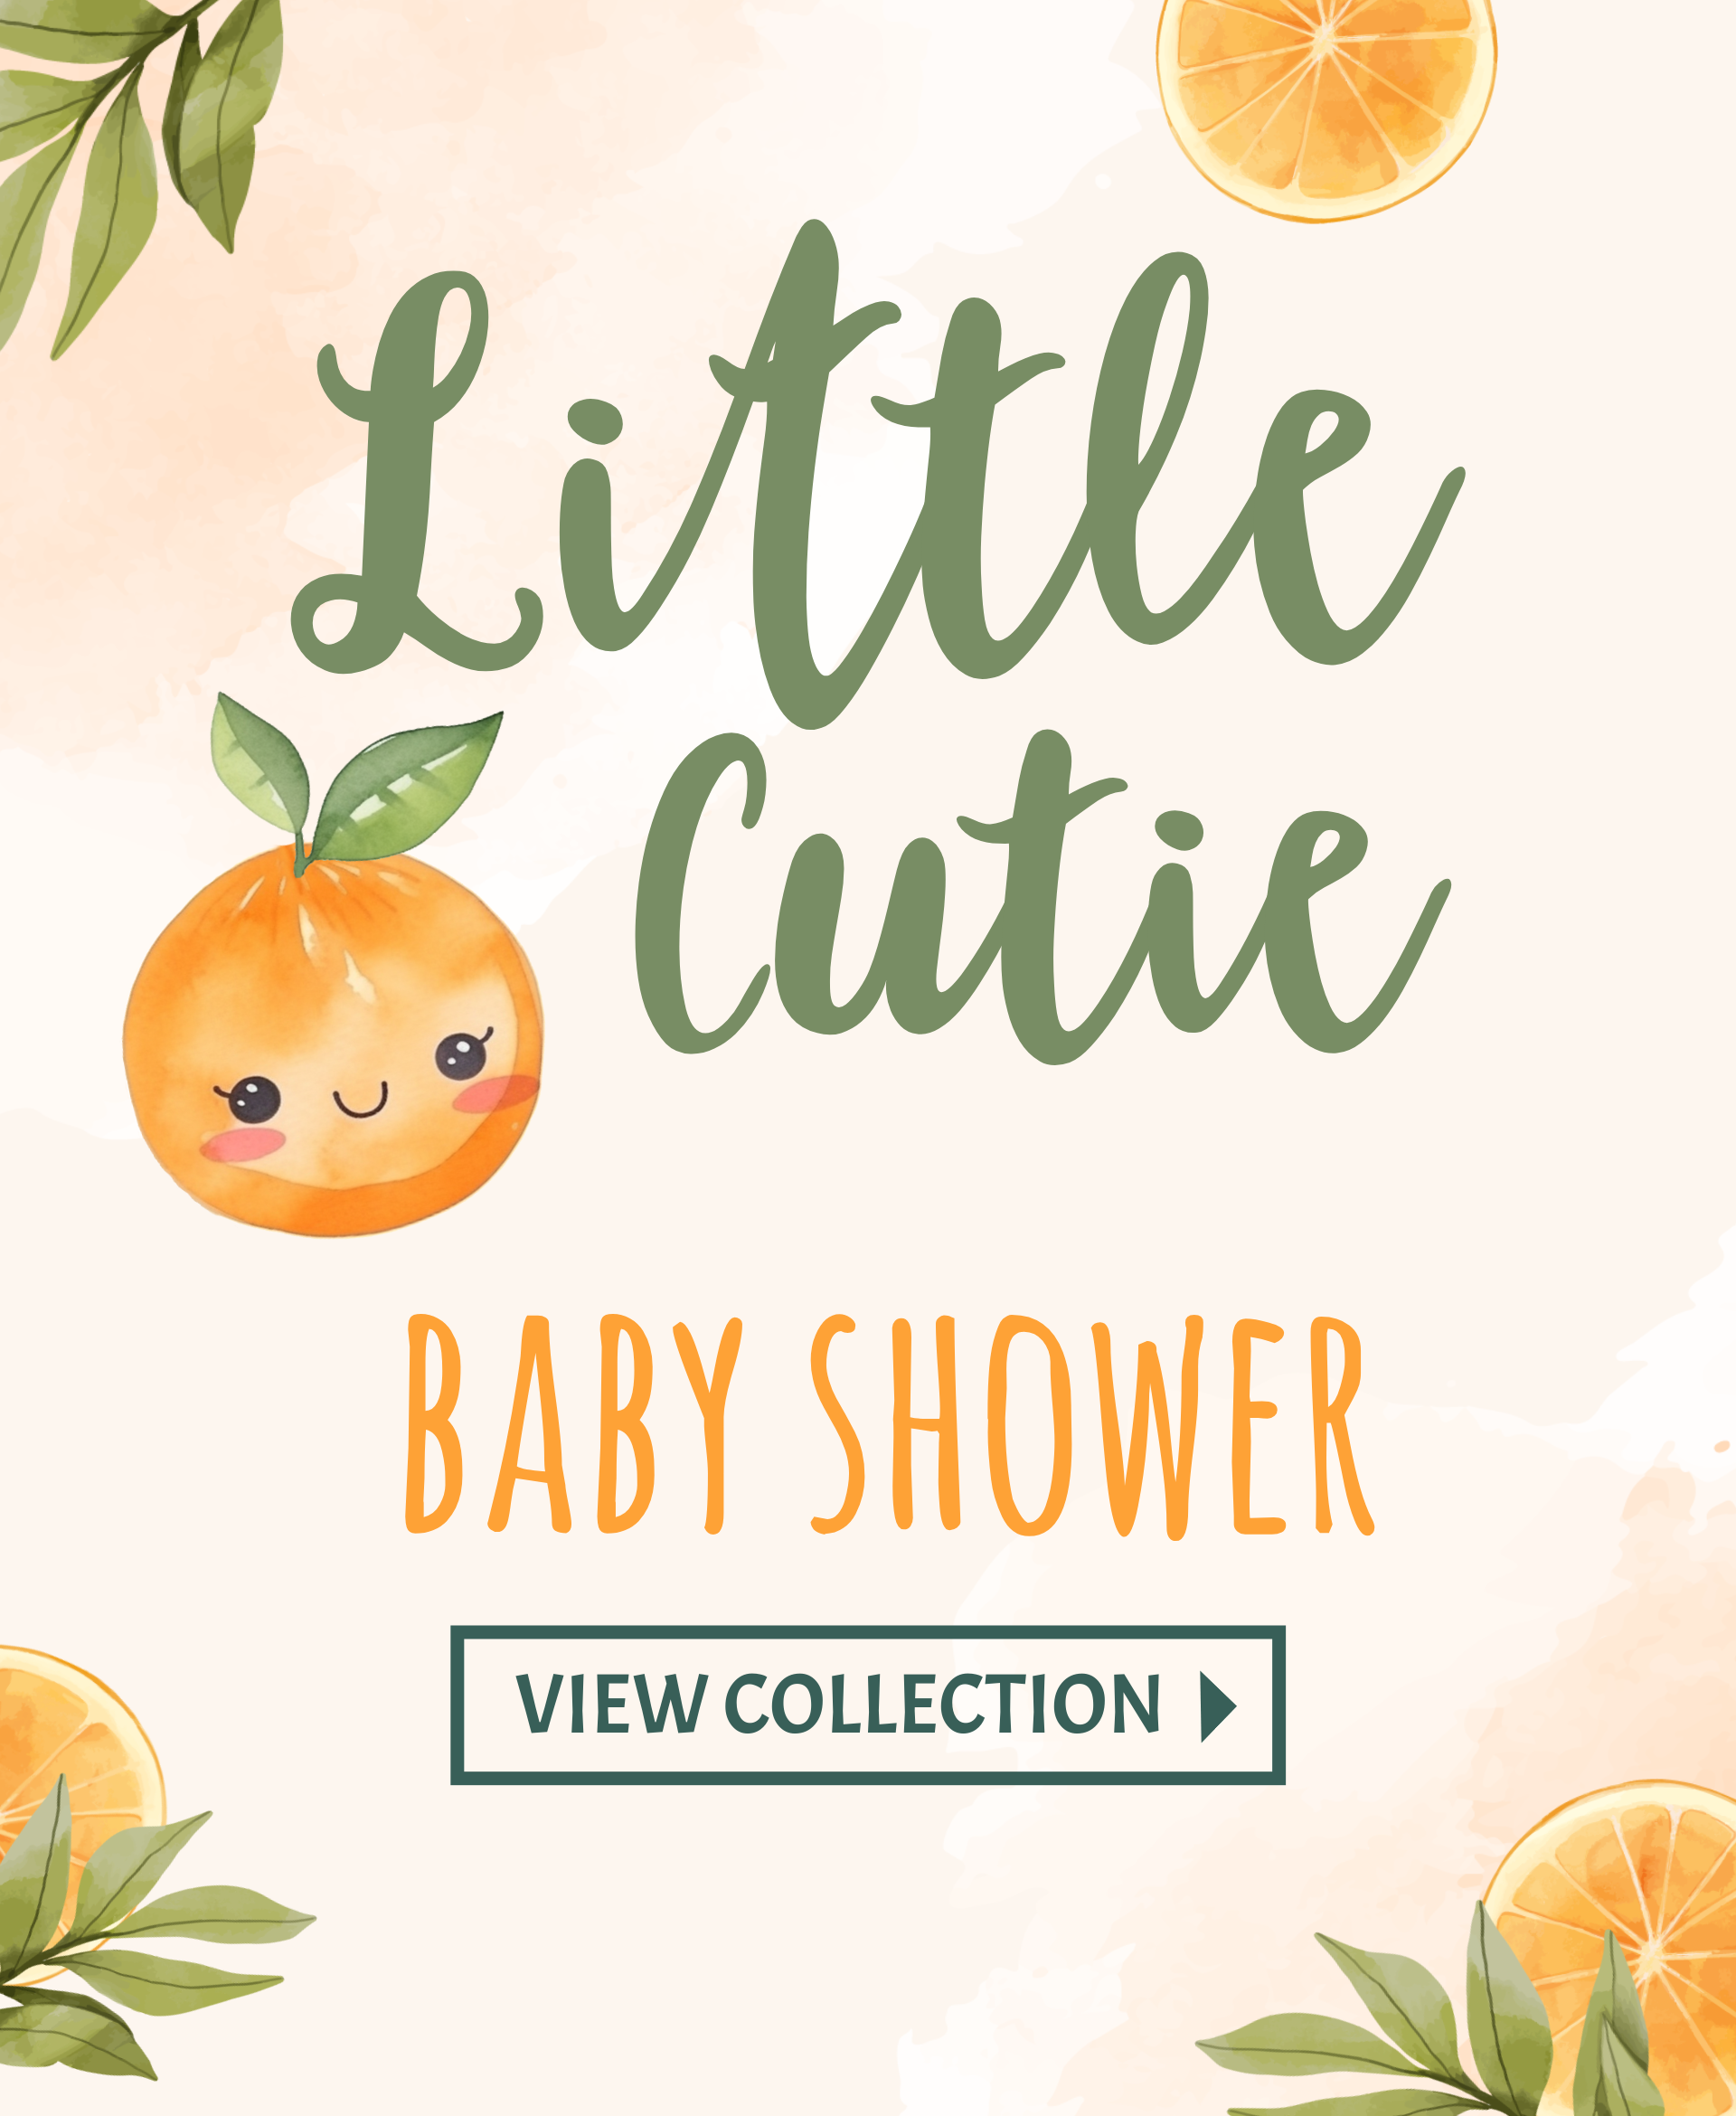 Little Cutie Baby Shower